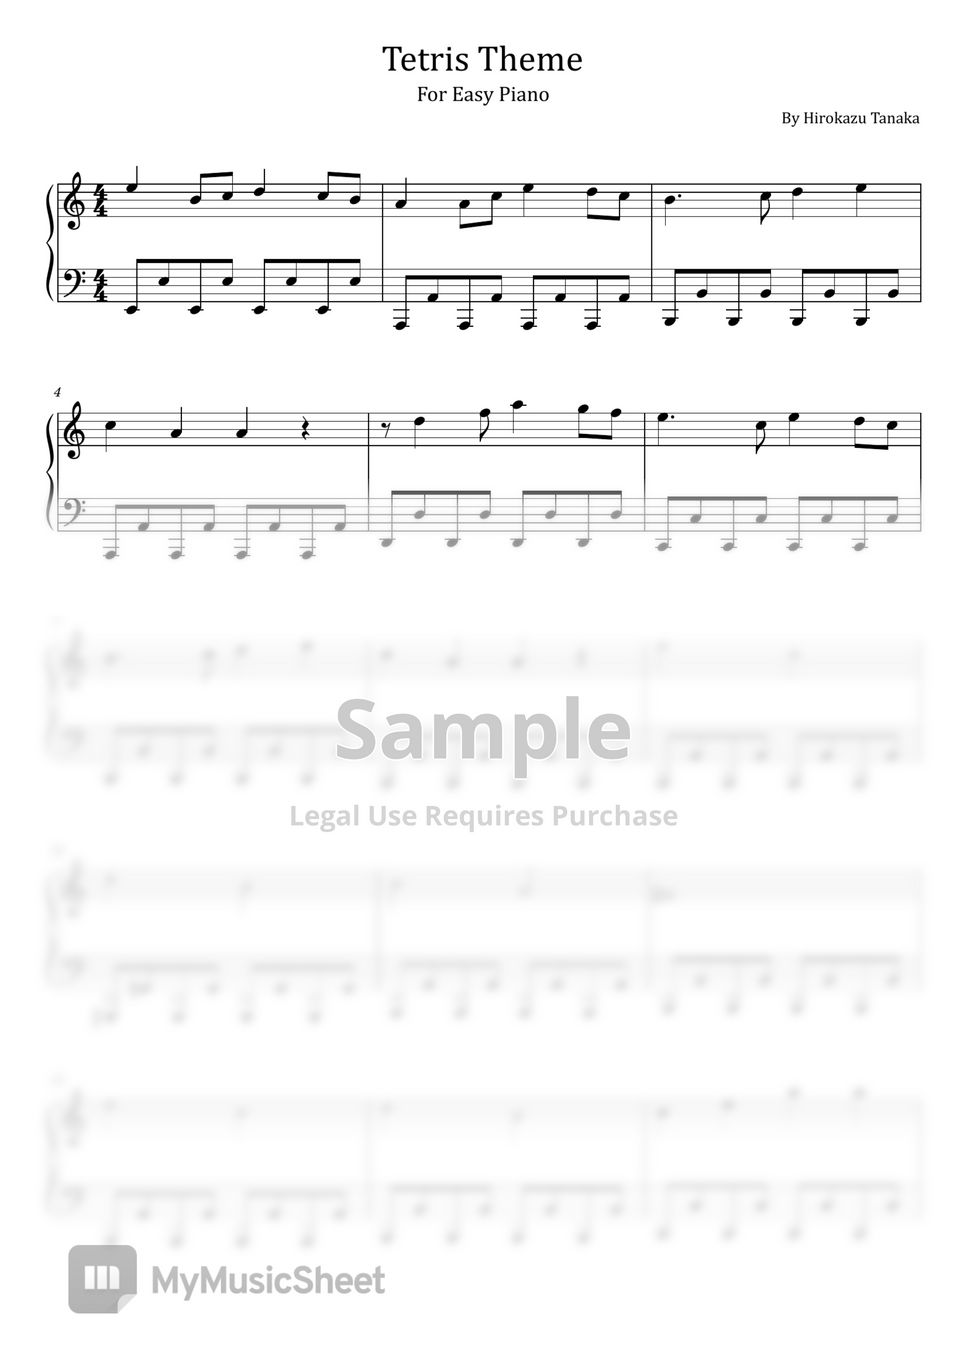 Hirokazu Tanaka - Tetris Theme ((Korobeniki) -  For Easy Piano) by poon